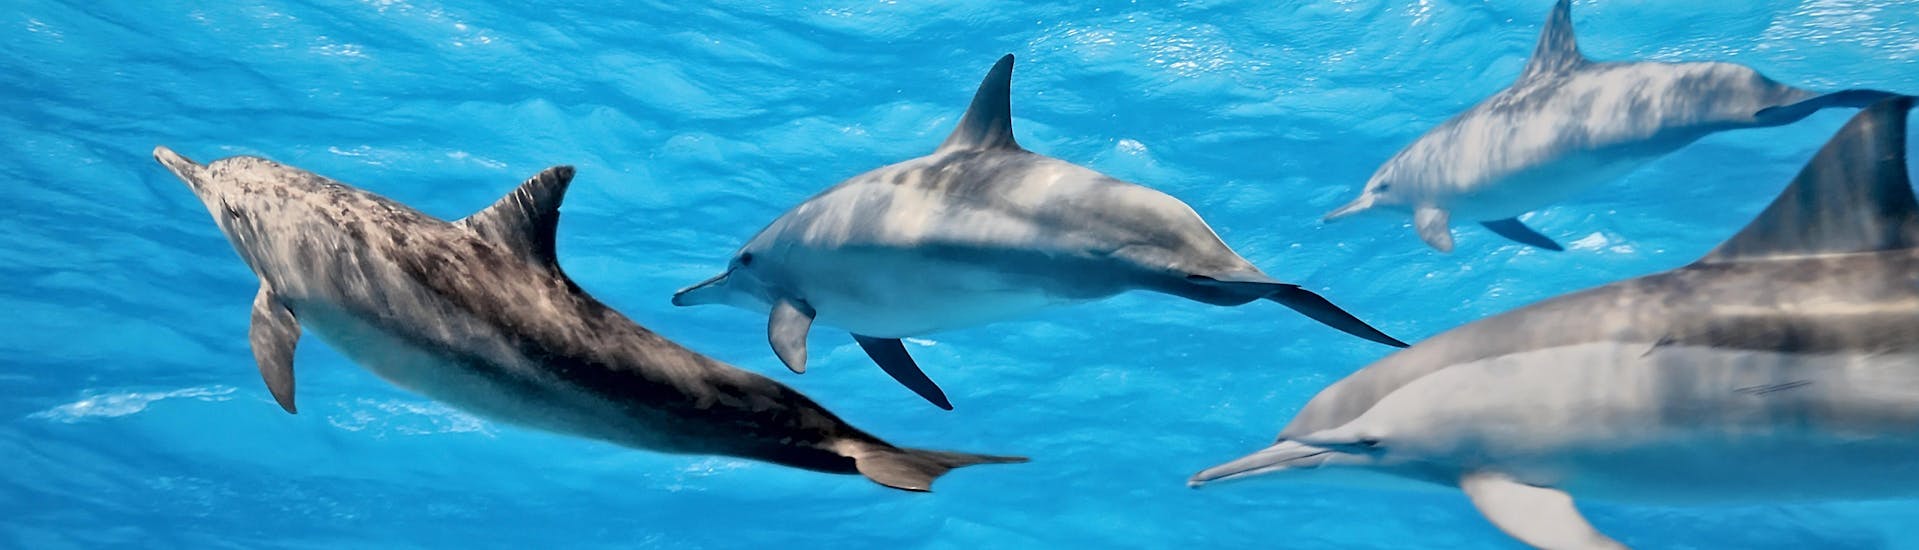 Zie dolfijnen zwemmen tijdens jouw boottocht en zie ze springen